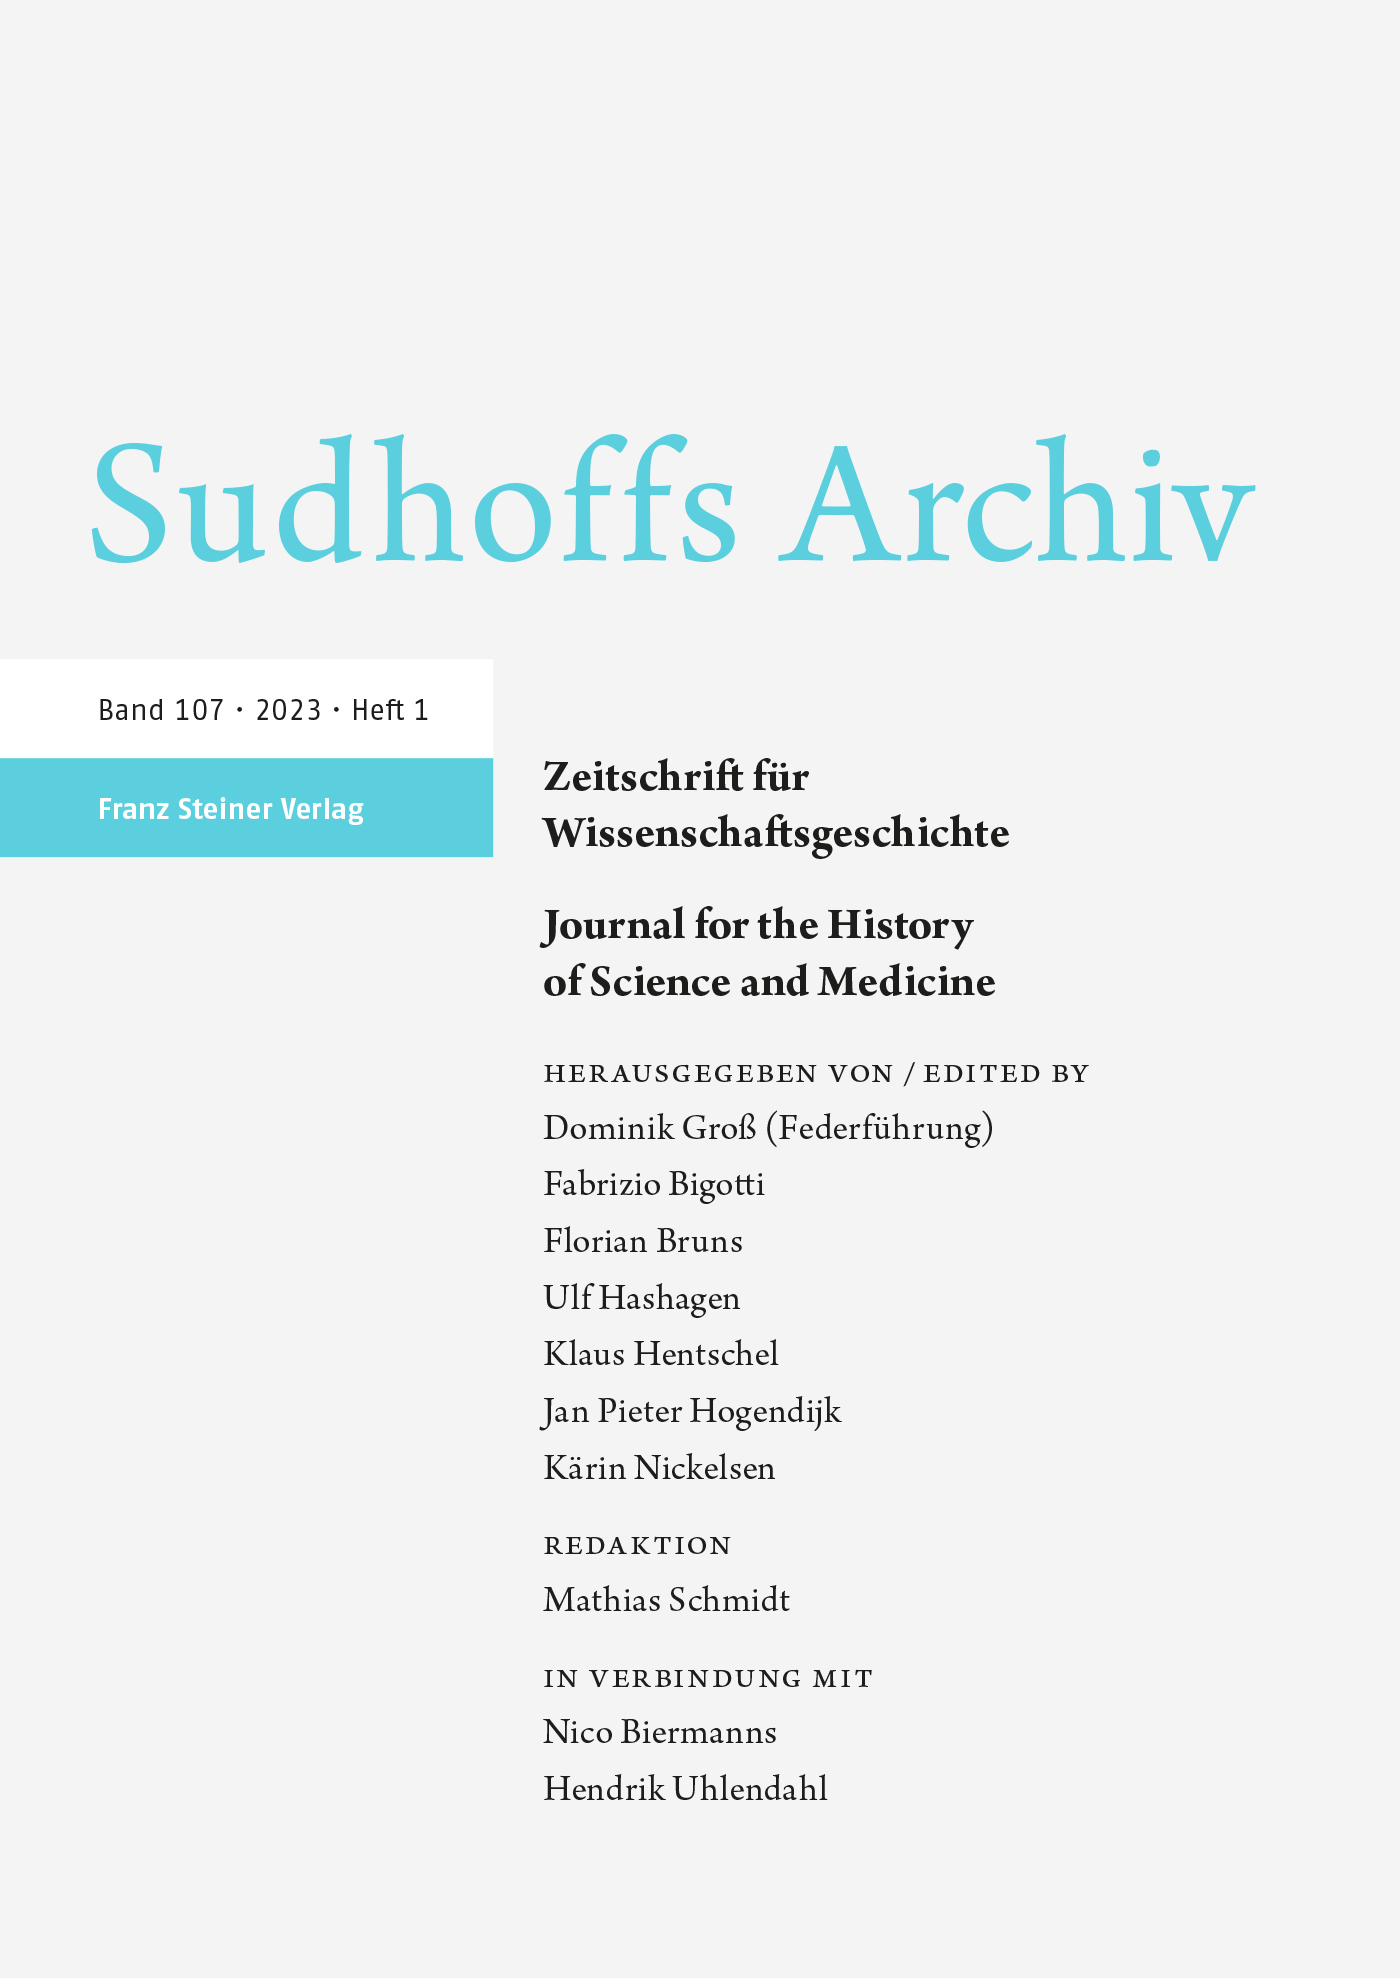 Sudhoffs Archiv - online